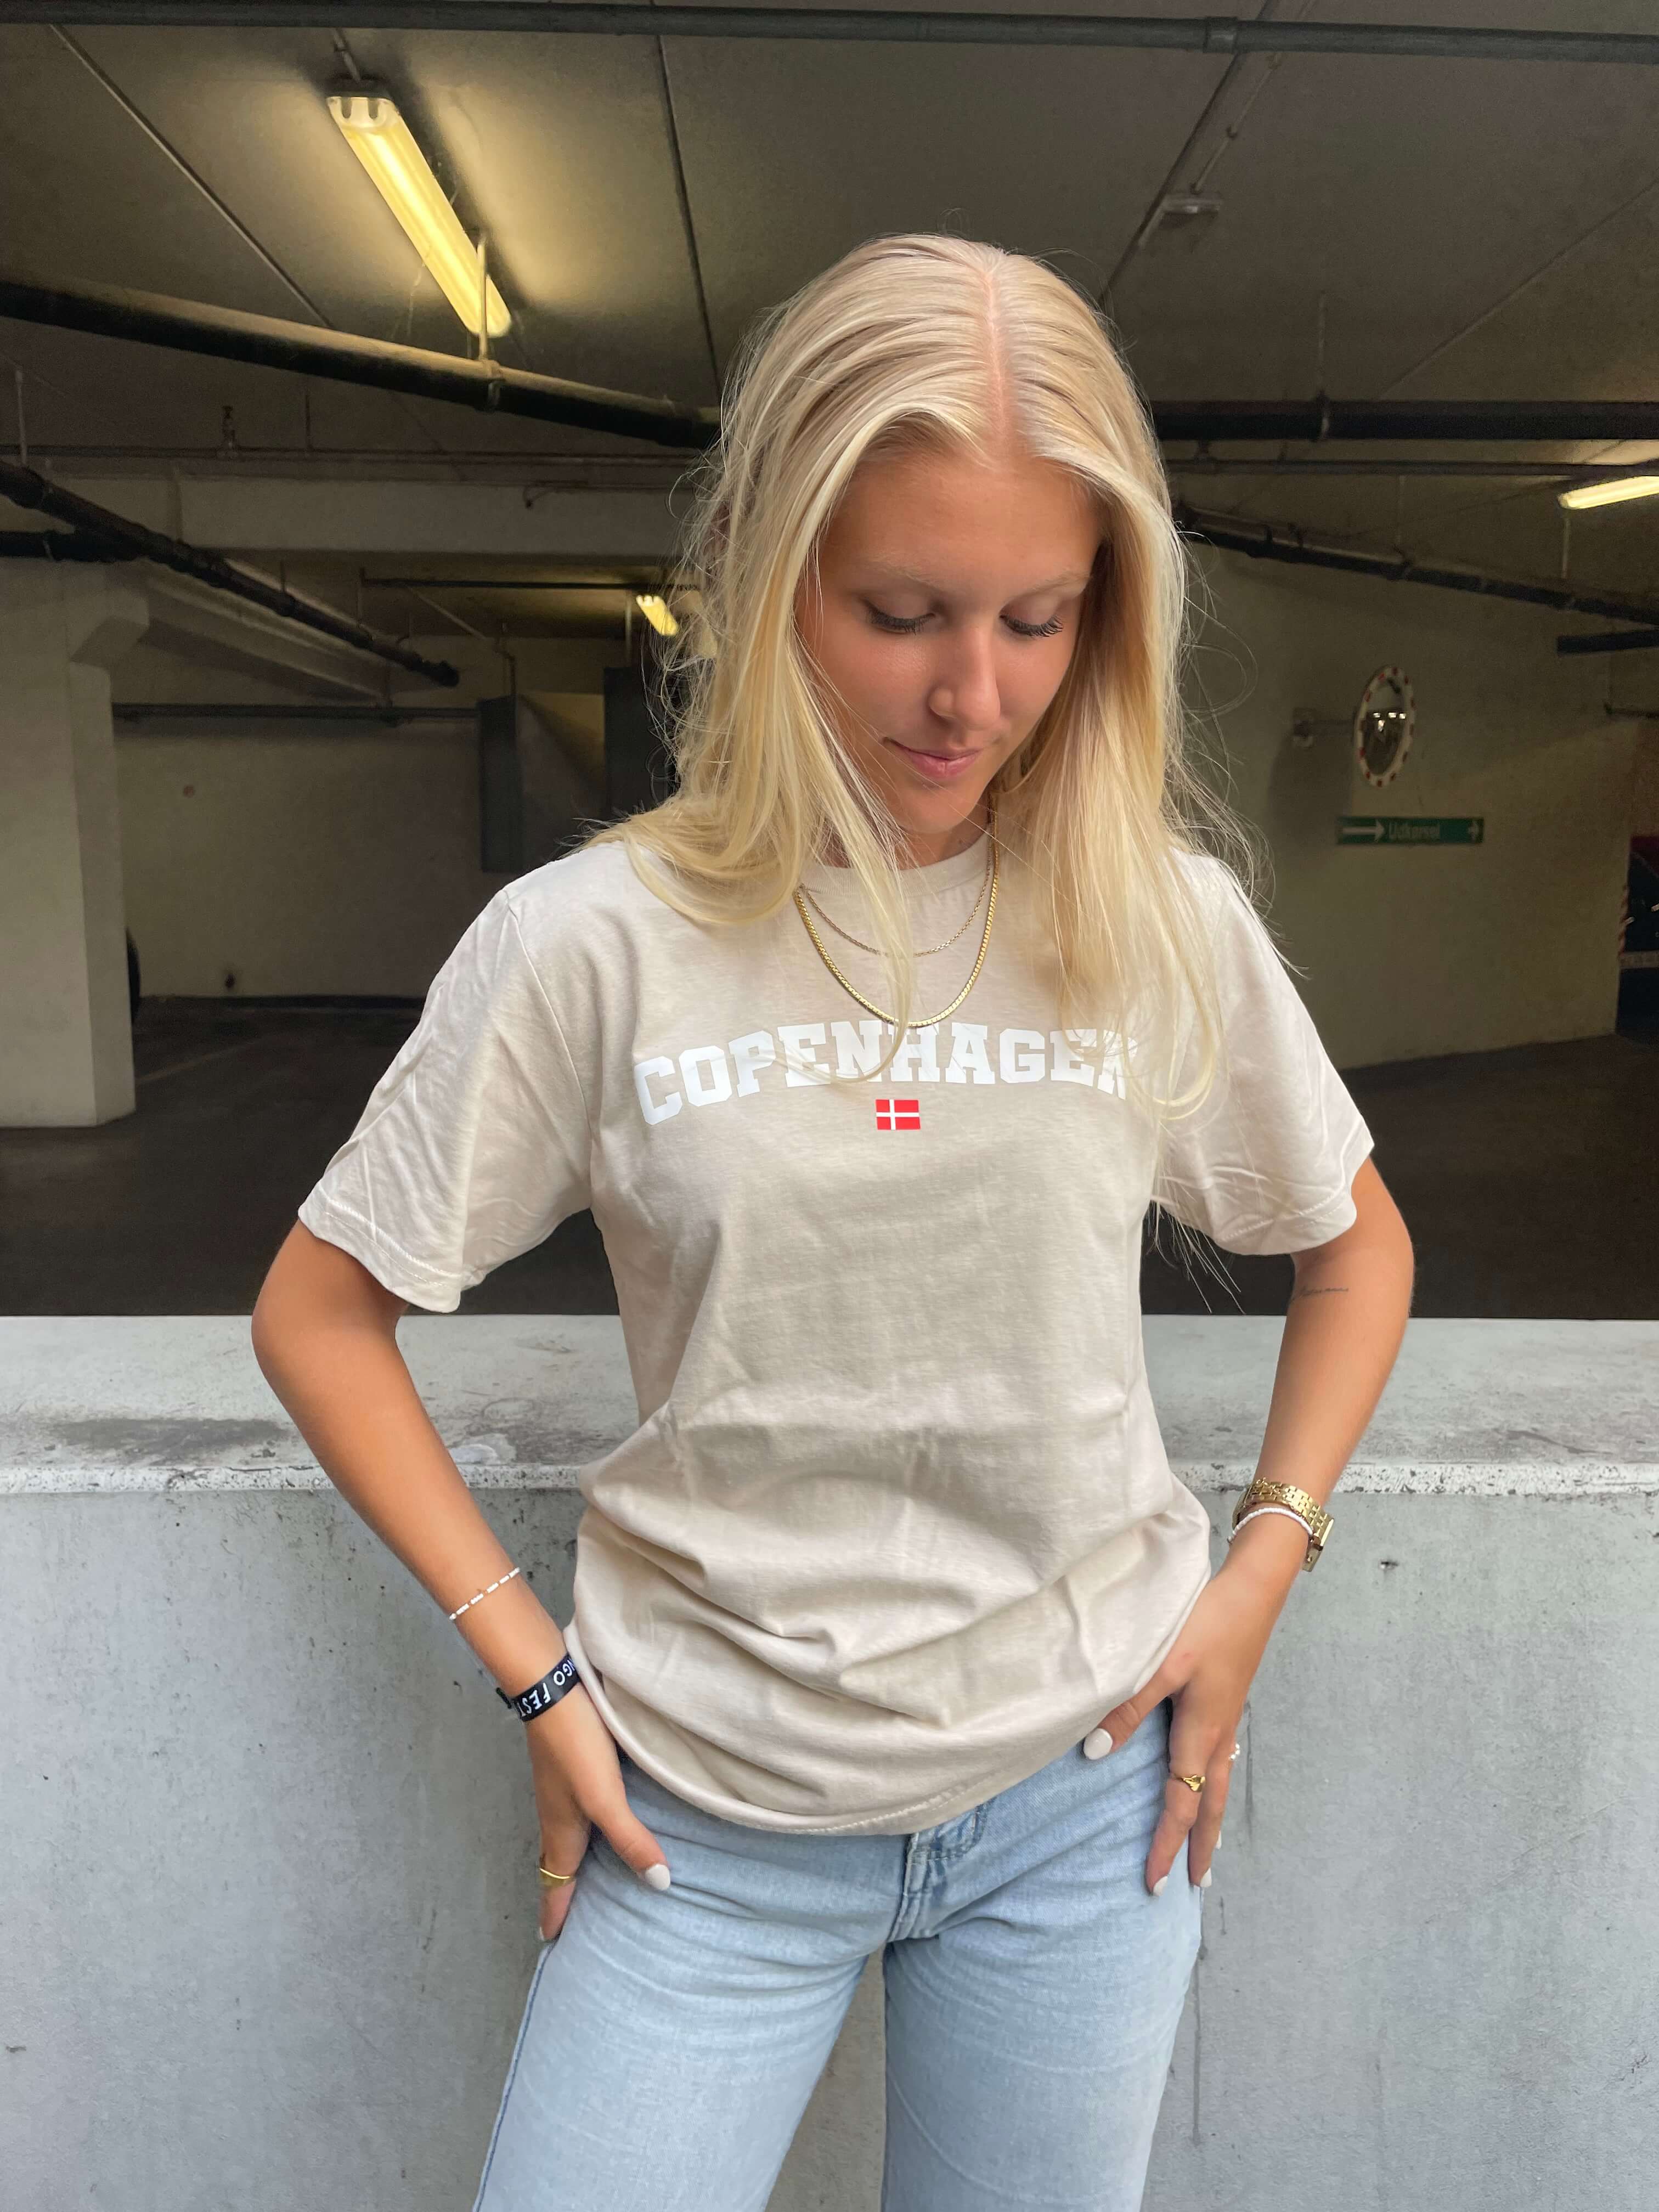 Copenhagen - Sand T-Shirt